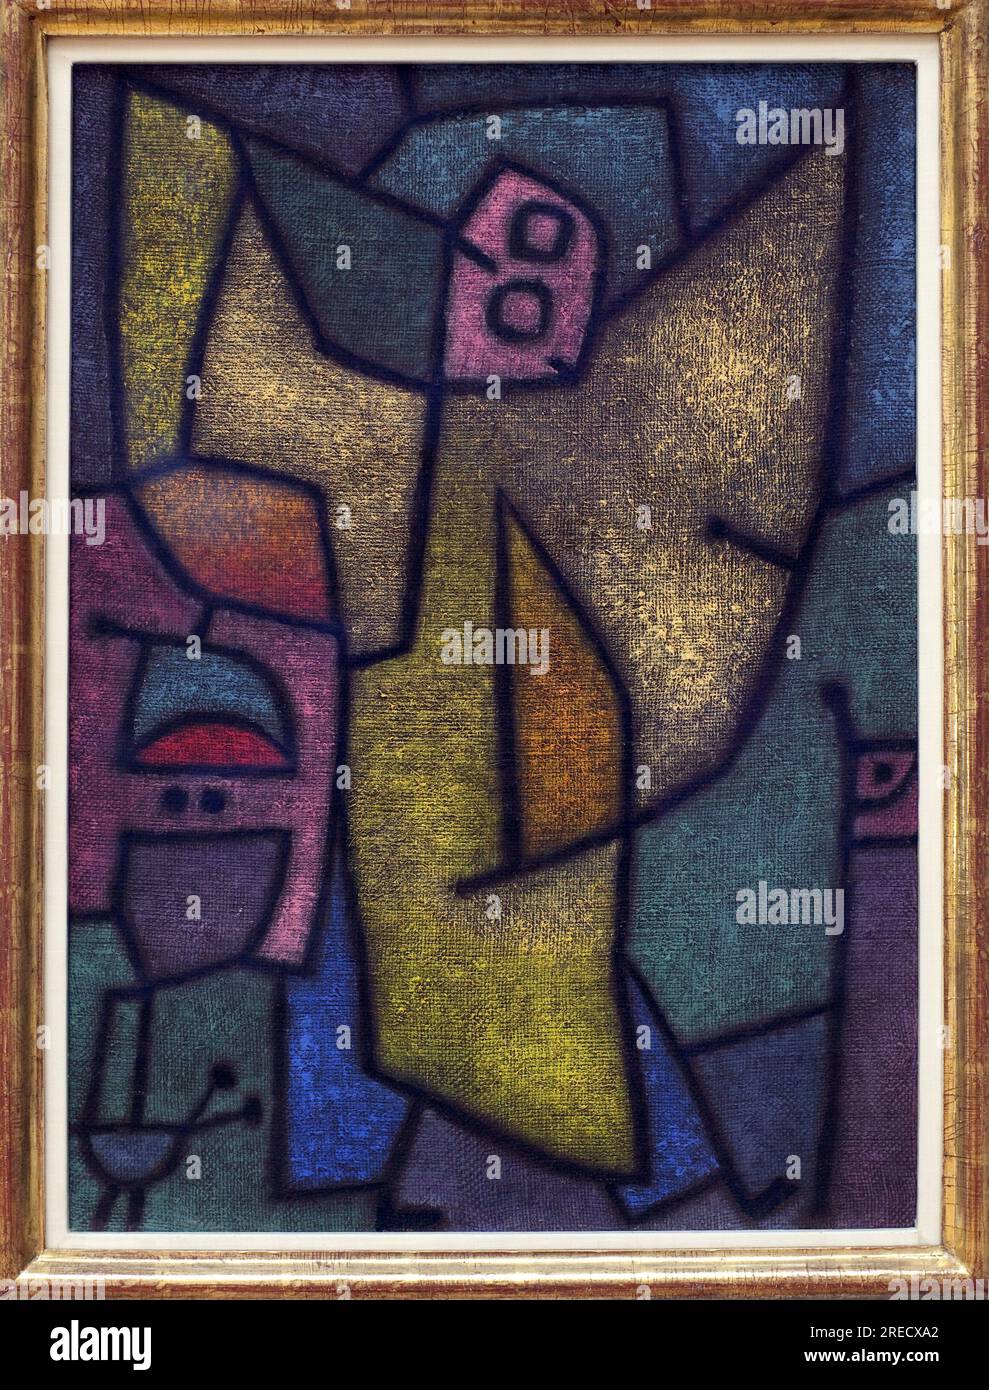 Angelus Militans. Peinture de Paul Klee (1879-1940), huile, dessin a la detrempe sur jute, sur Fond de colle, 1940. Kunstallee, 20e Siecle. Staatsgalerie, Stuttgart (Allemagne). Stockfoto